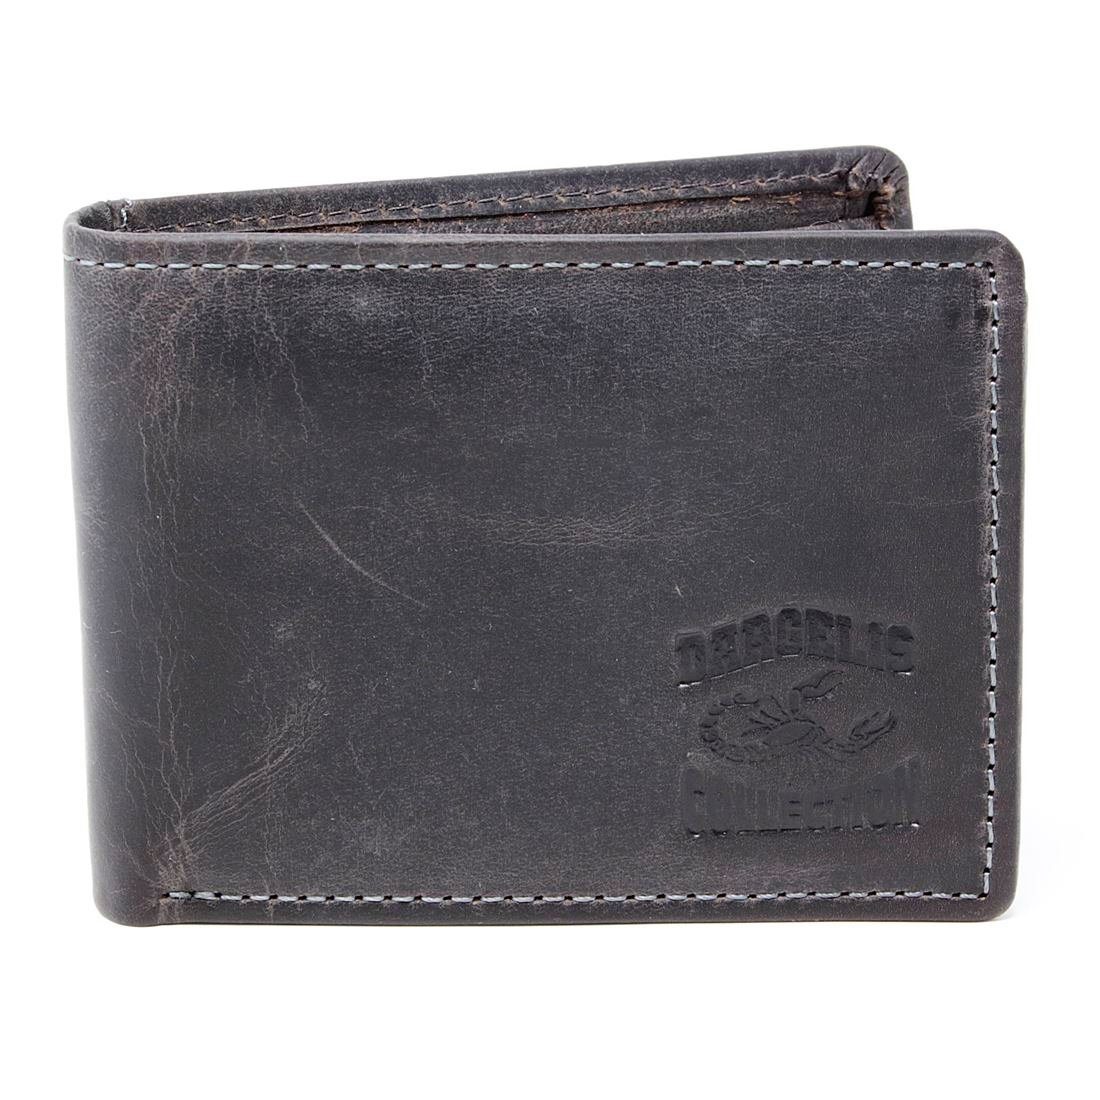 Herren mit RFID SHG Brieftasche Portemonnaie, Schutz Münzfach Geldbörse Männerbörse Lederbörse Börse Leder